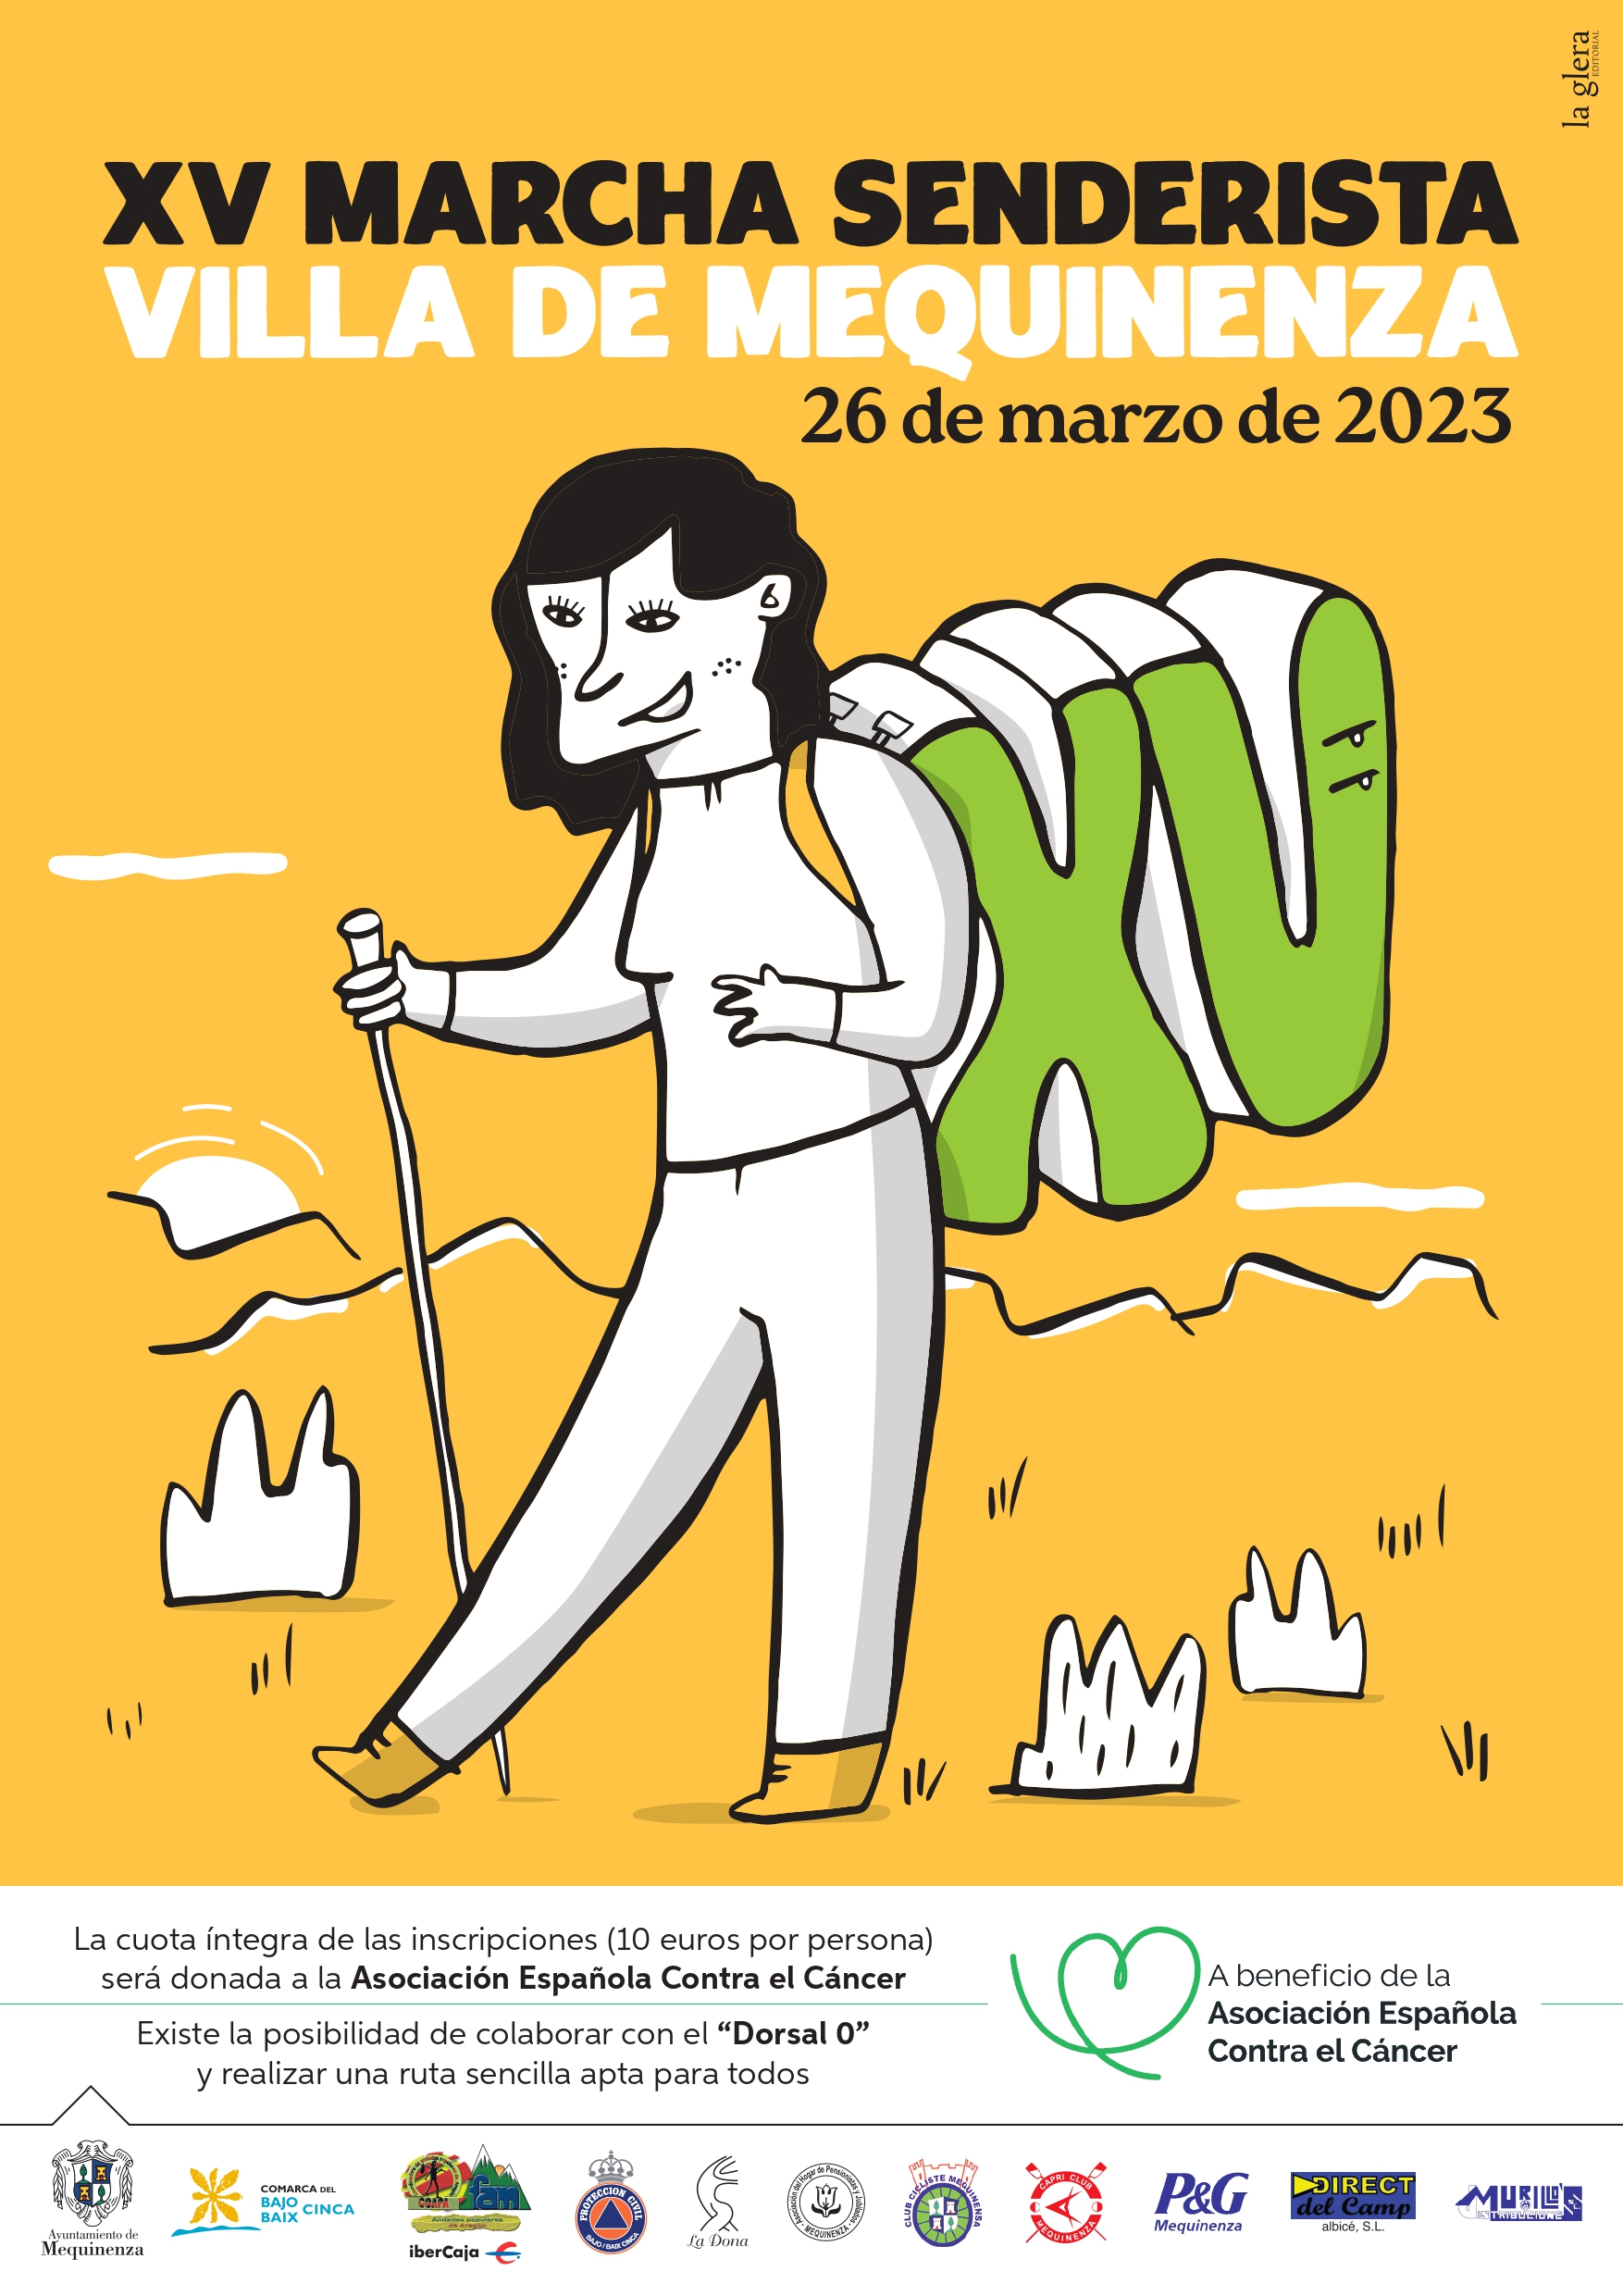 2023. Cartel XV marcha senderista Mequinenza